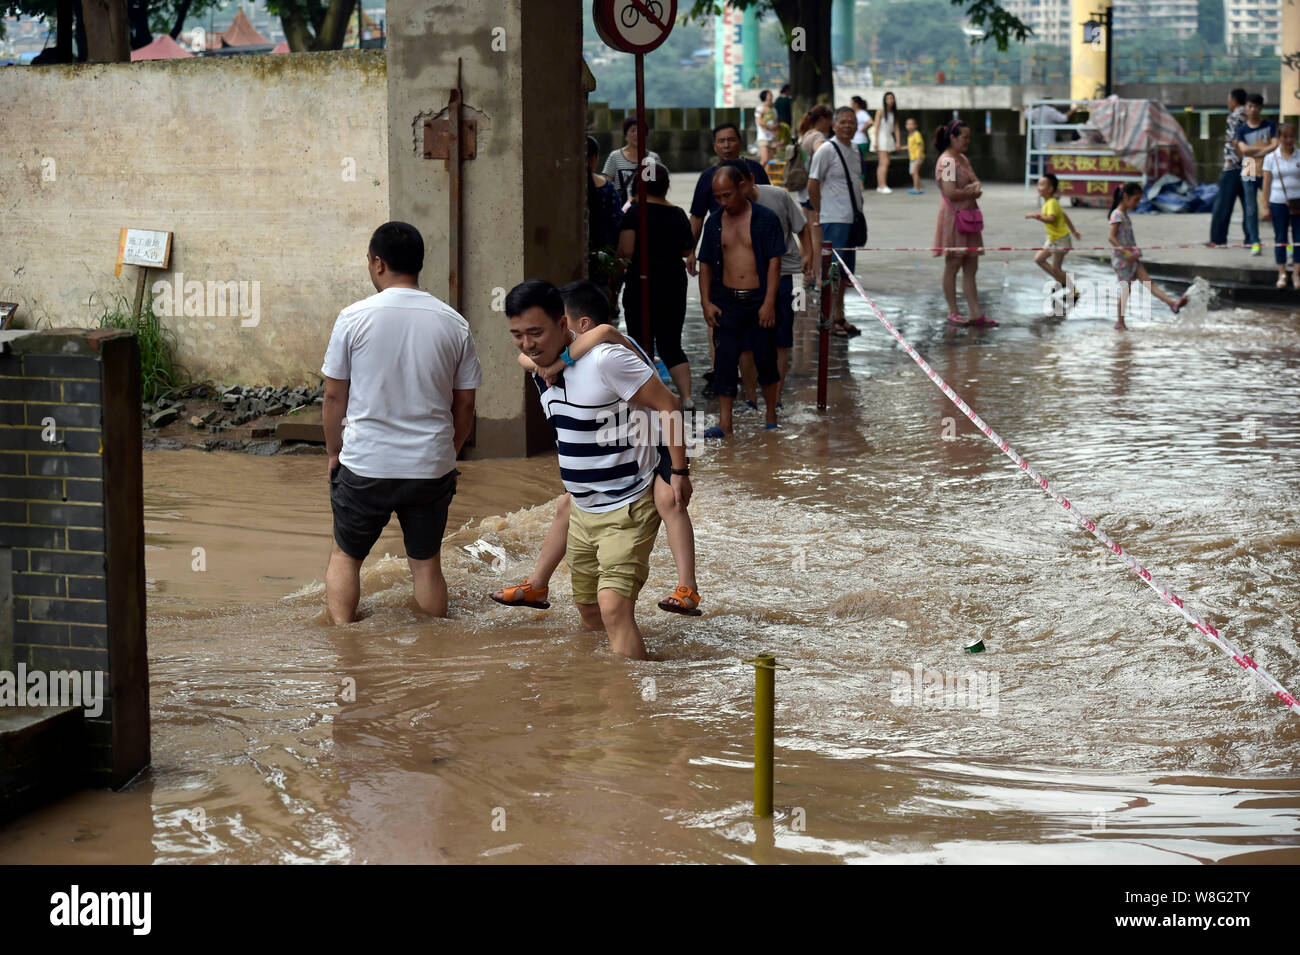 Un père avec son fils à l'arrière des promenades dans inondation causée par les fortes pluies à Chongqing, Chine, 30 juin 2015. Quatre jours de fortes pluies ont causé de sev Banque D'Images